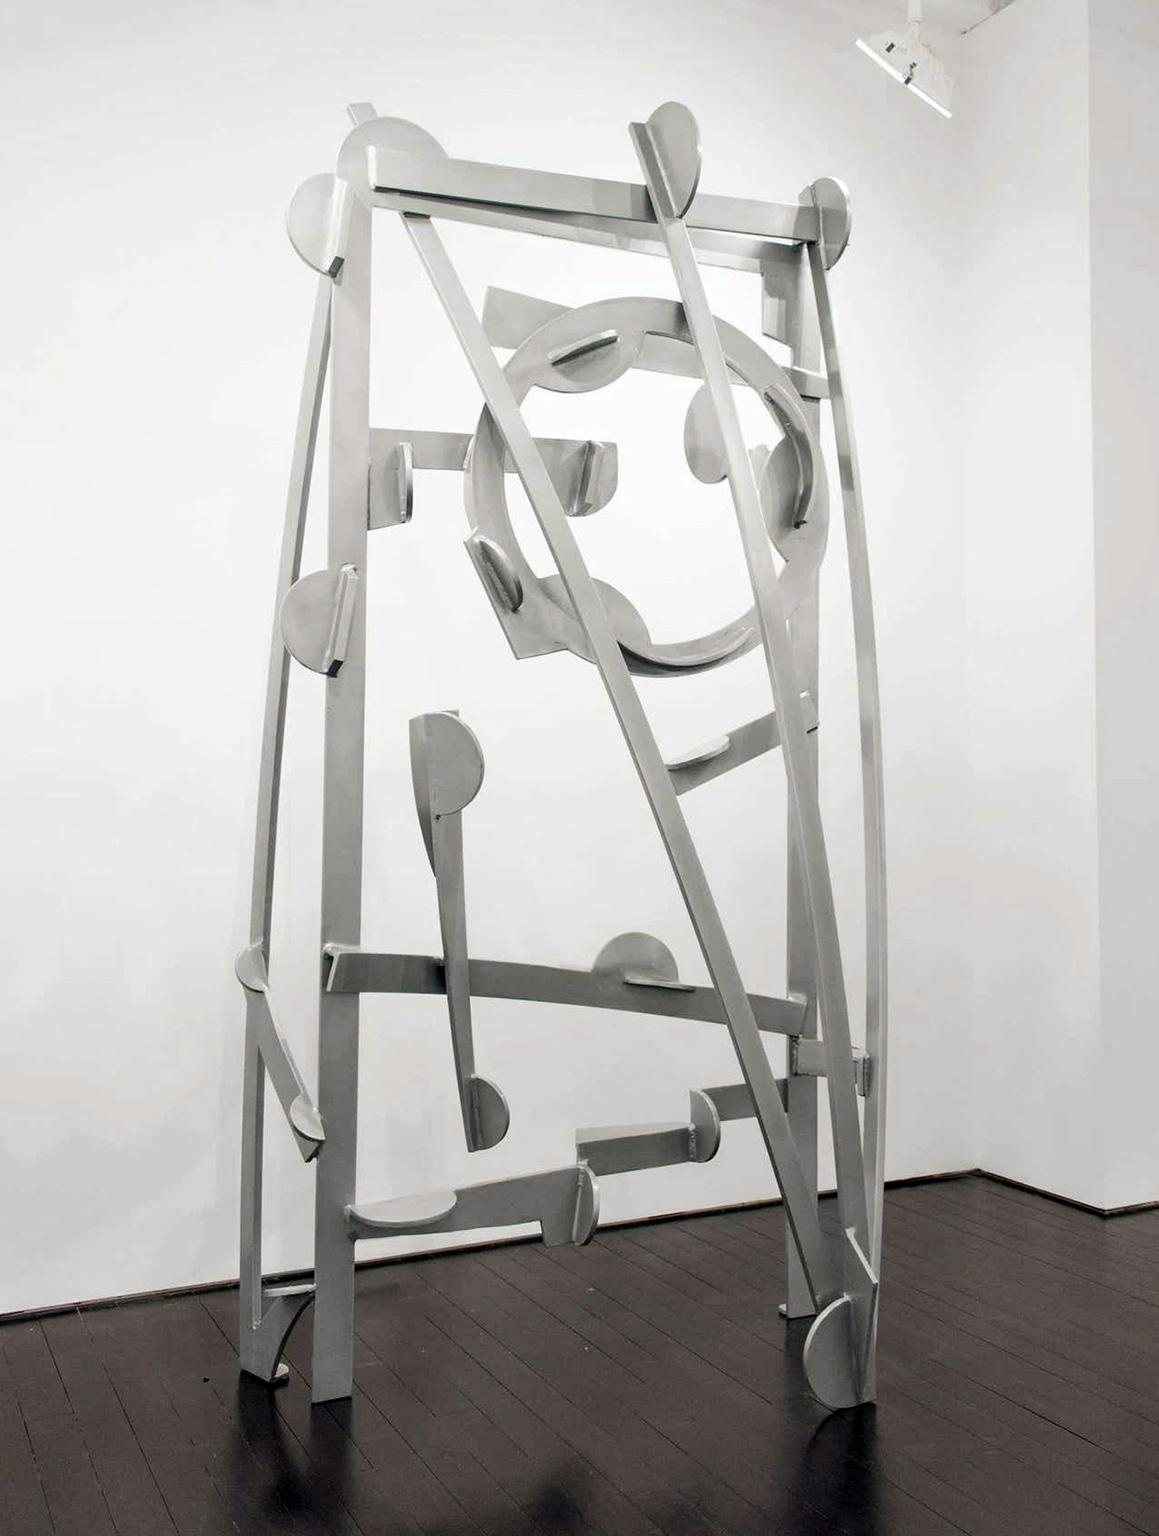 Joel Perlman Abstract Sculpture - "Broadway" Abstract, Steel Metal Industrial Outdoor Sculpture